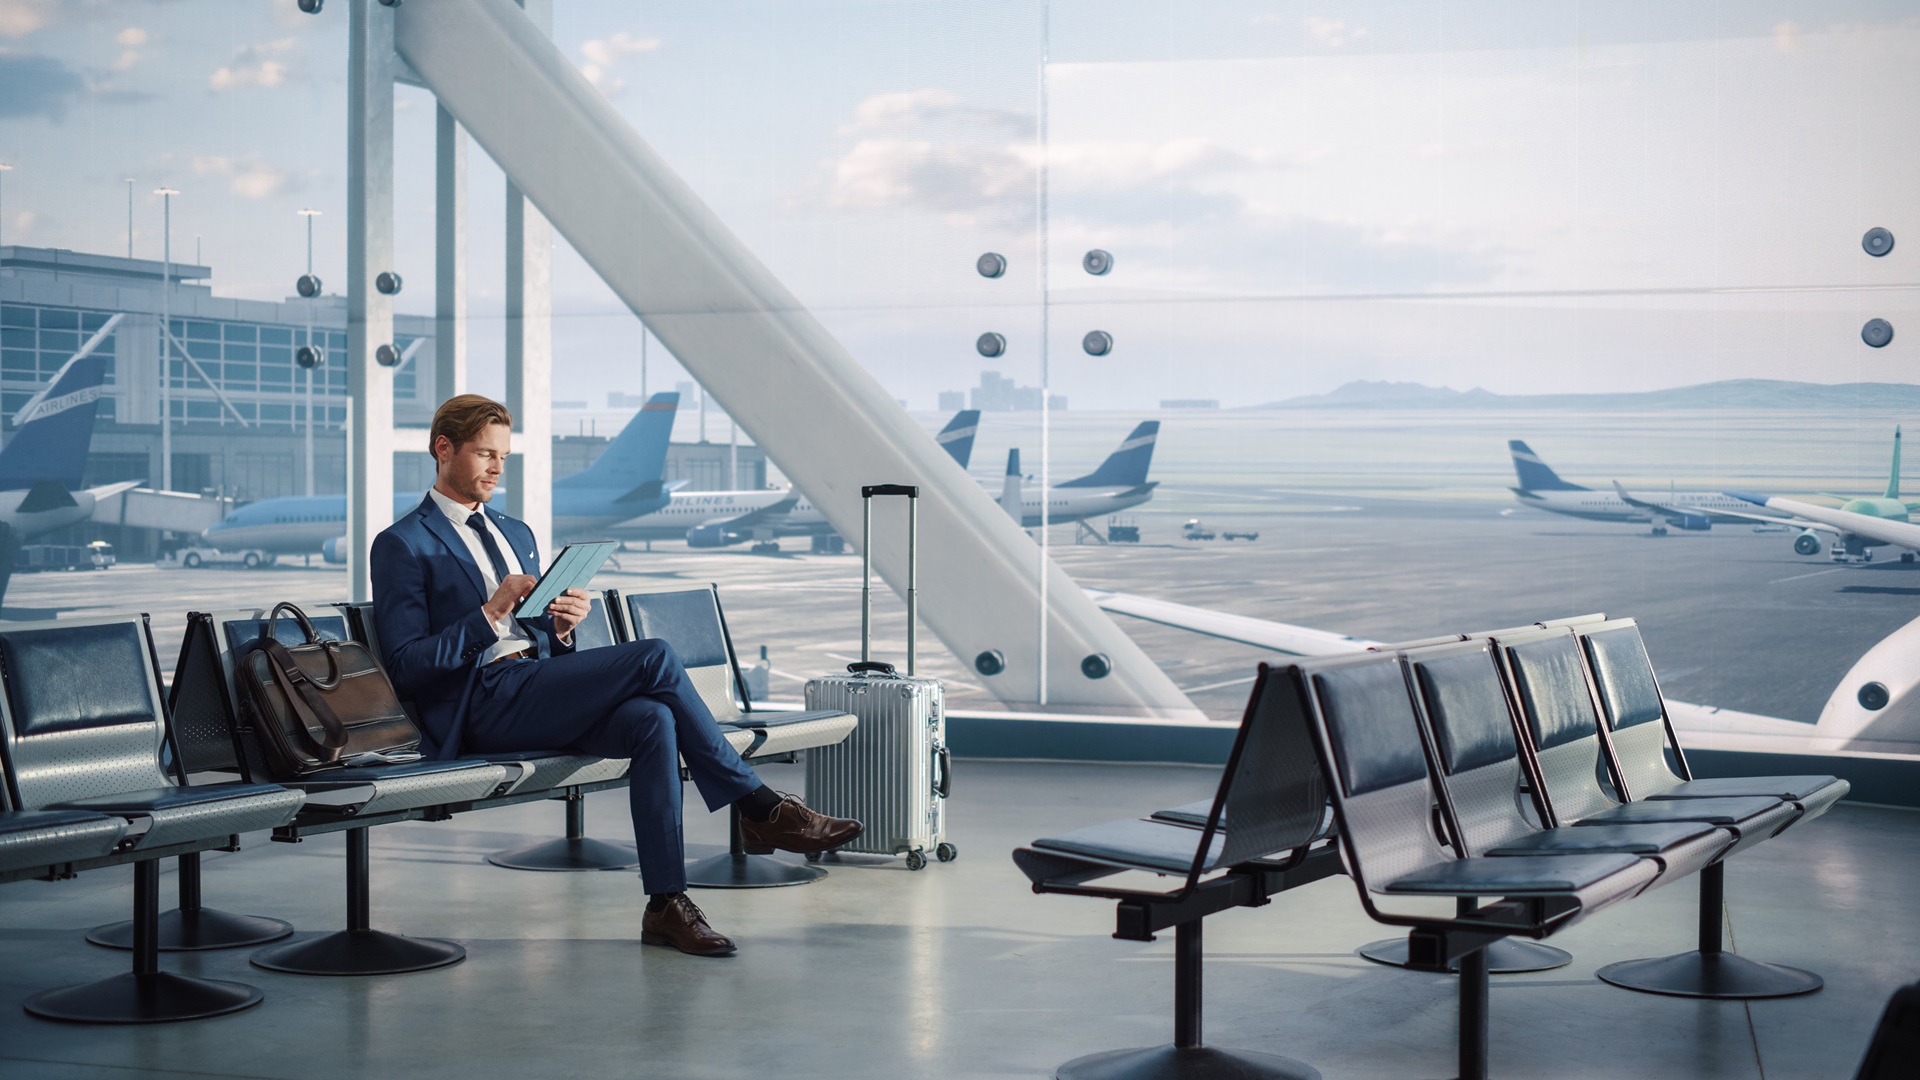 en forretningsmann i dress som sitter ved gaten ved en flyplass og arbeider på en digital tablet